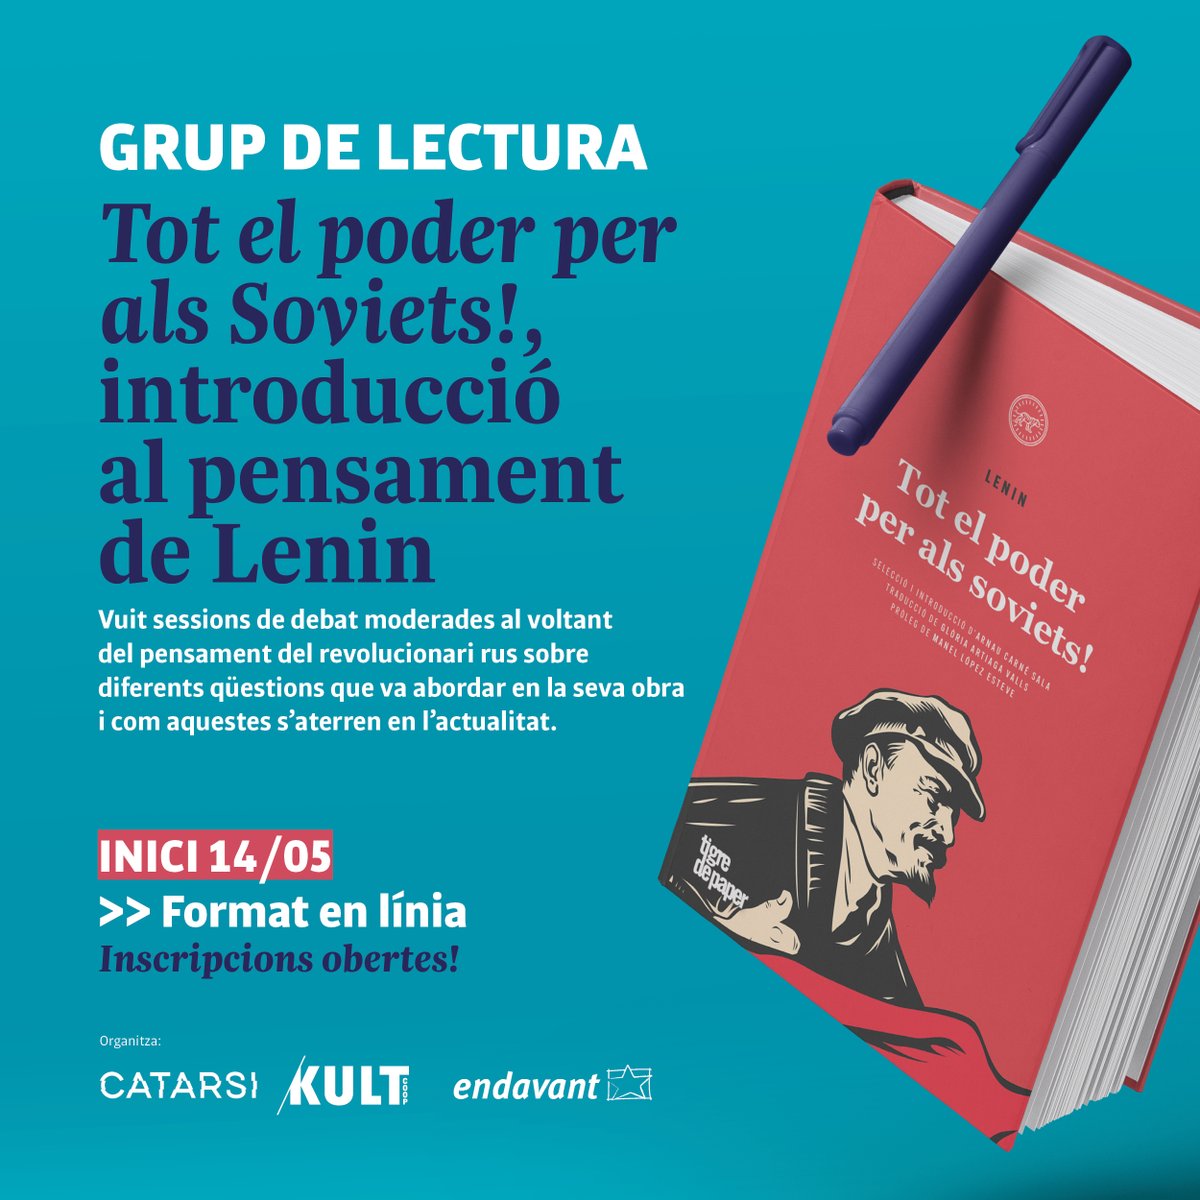 NOVETAT | Presentem un grup de lectura sobre Lenin a partir de l'antologia en català 'Tot el poder per als soviets!' publicada en el seu centenari.  

Vuit sessions de debat amb introducció sobre diversos temes fonamentals del pensament d'un dels homes d'acció més importants del…